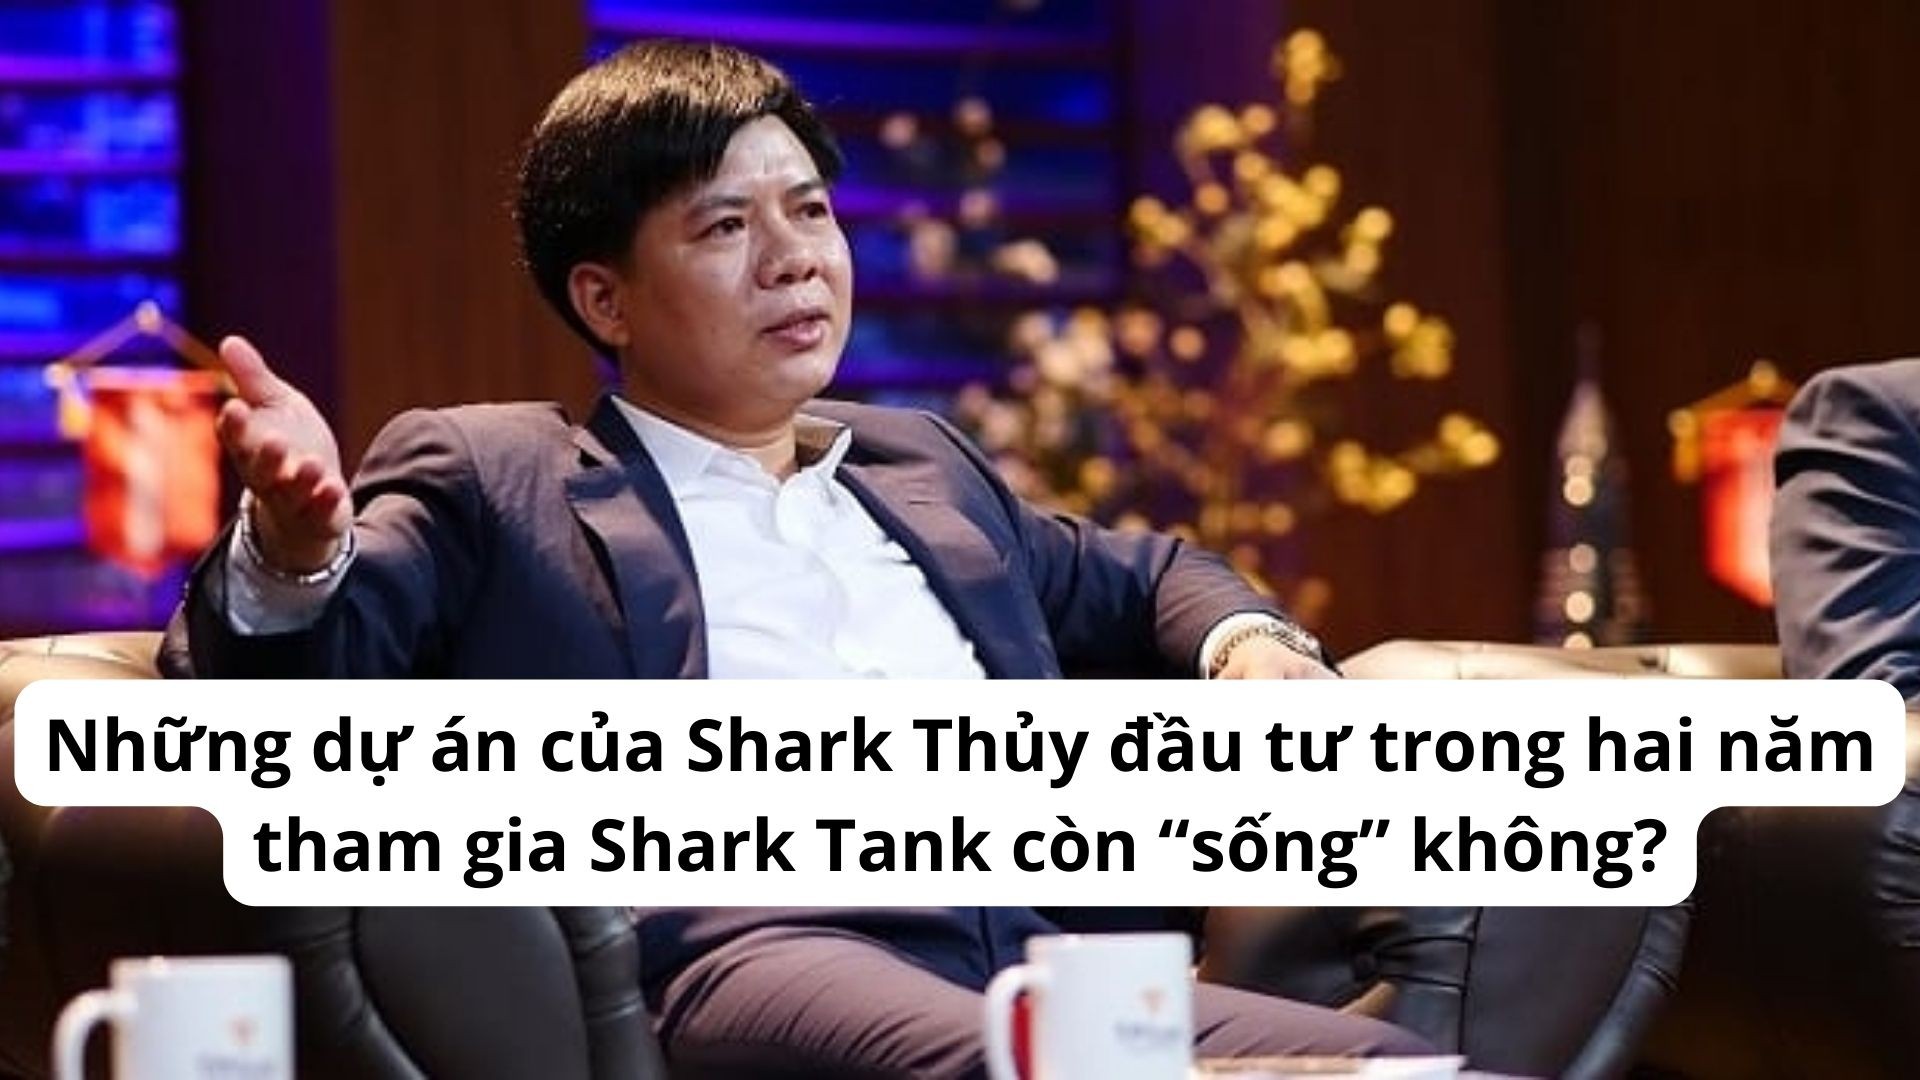 nhung-du-an-cua-shark-thuy-dau-tu-trong-hai-nam-tham-gia-shark-tank-con-song-khong-1-1670272339.jpg